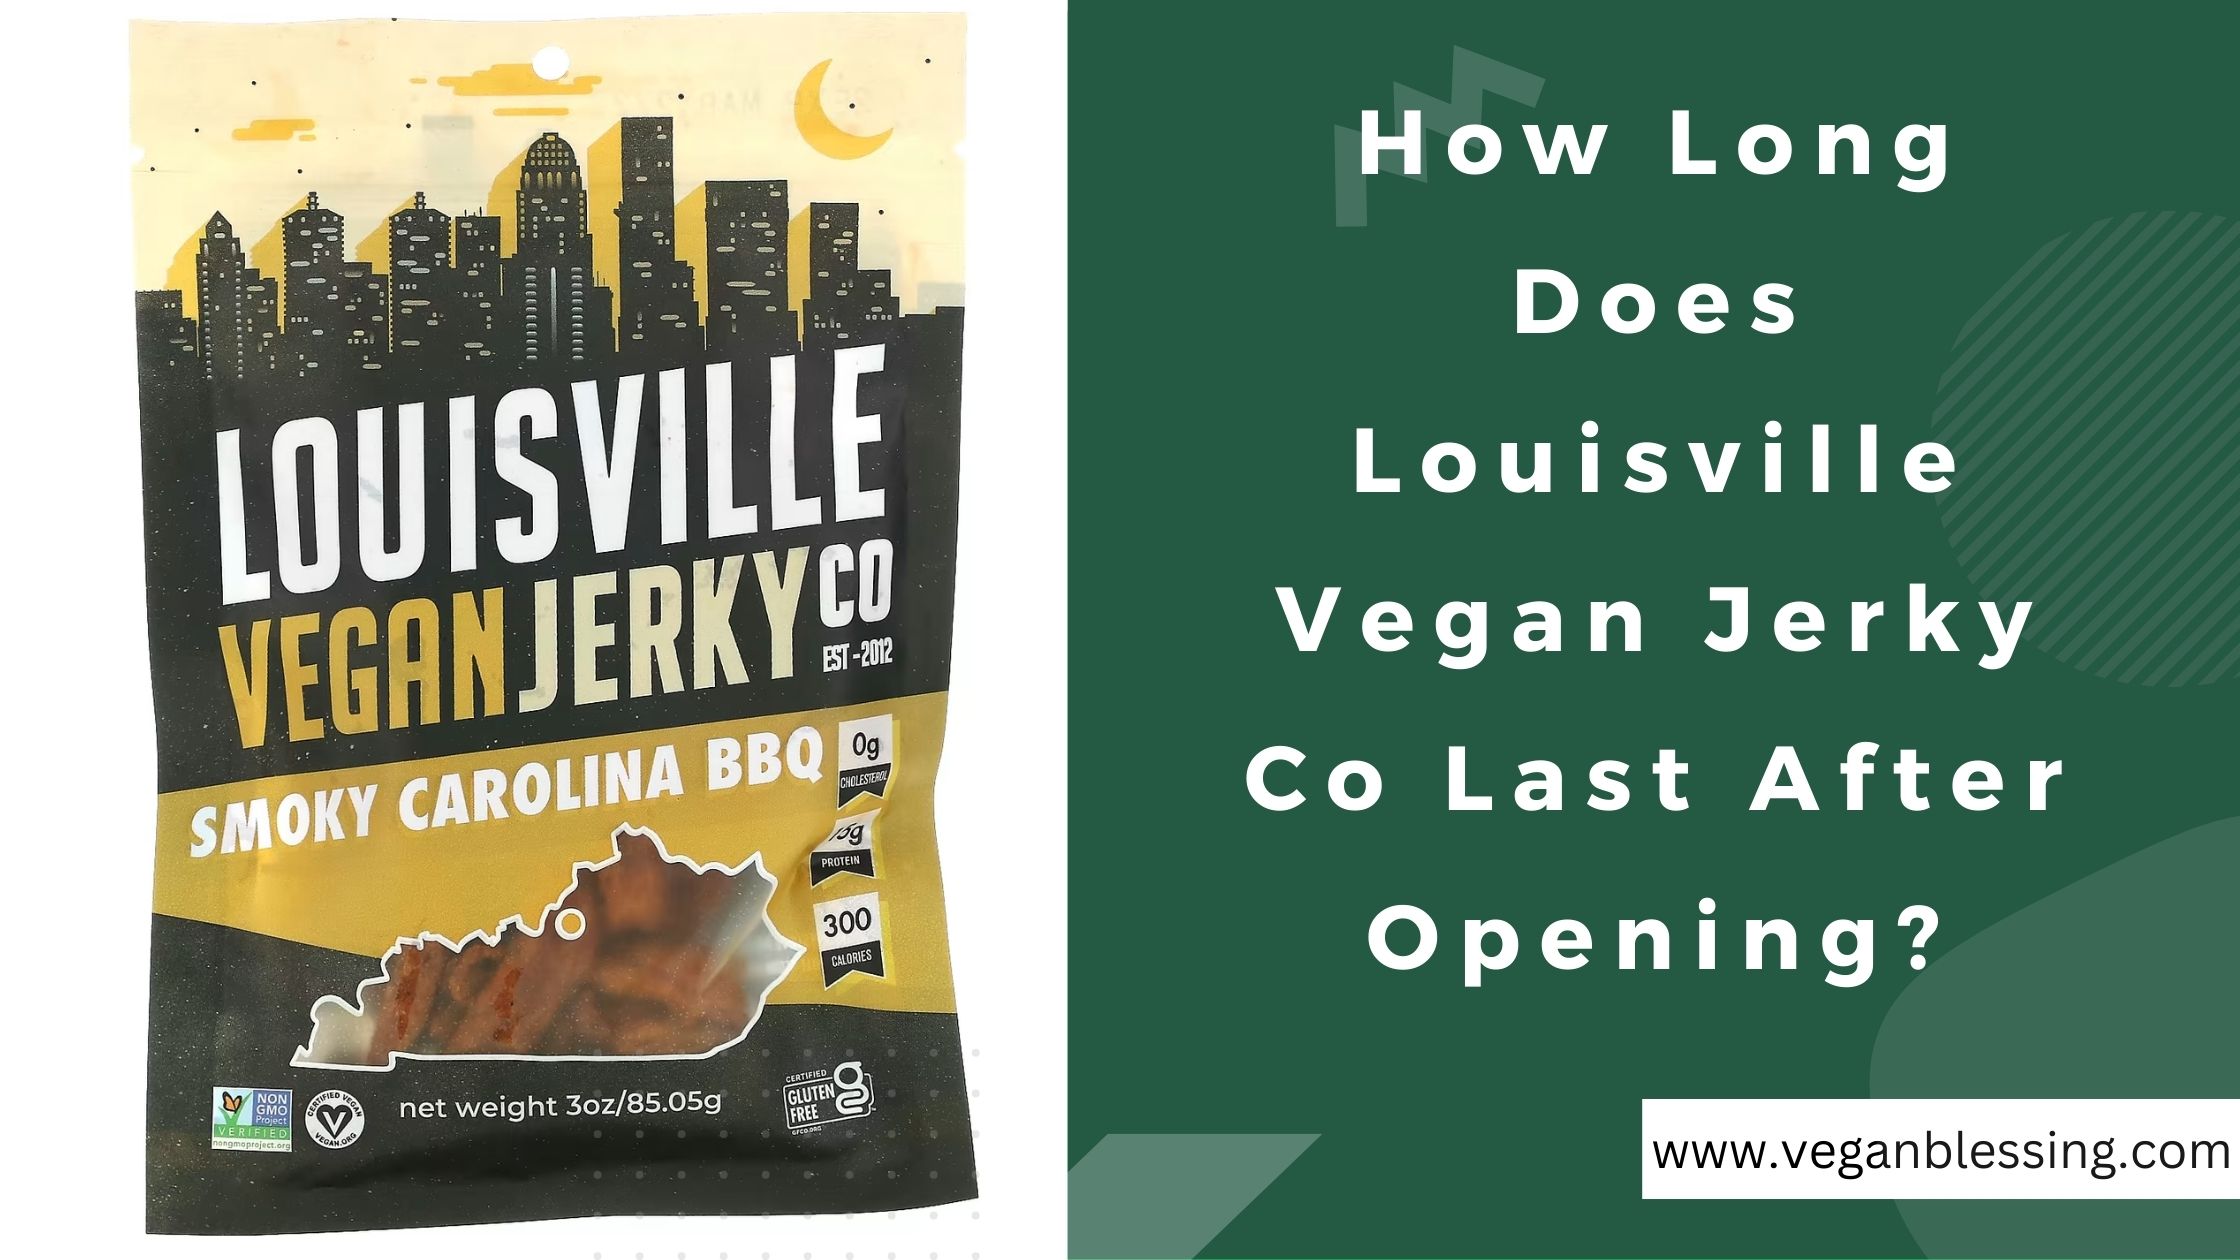 How Long Does Louisville Vegan Jerky Co Last After Opening? How Long Does Louisville Vegan Jerky Co Last After Opening